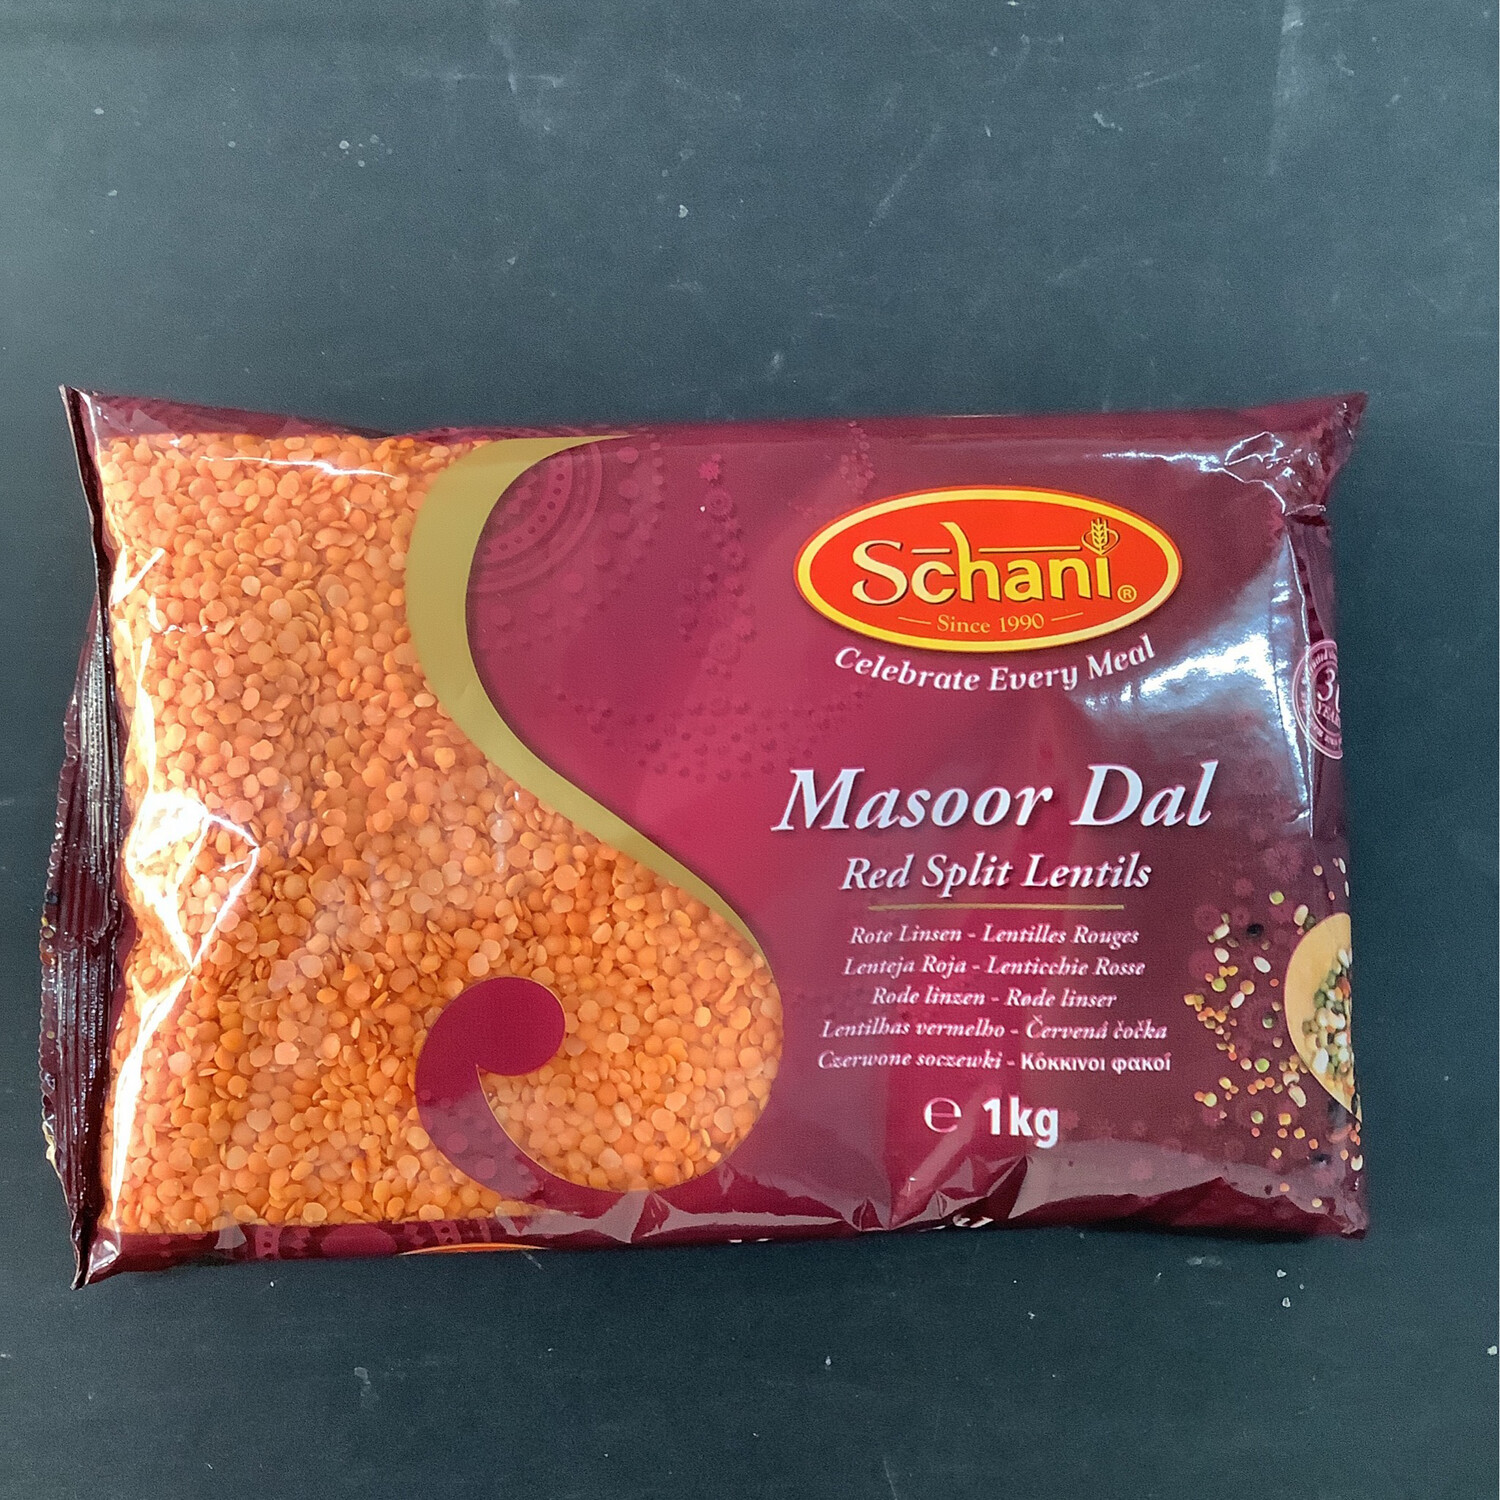 Schani Masoor Dal Red split lentils 1kg